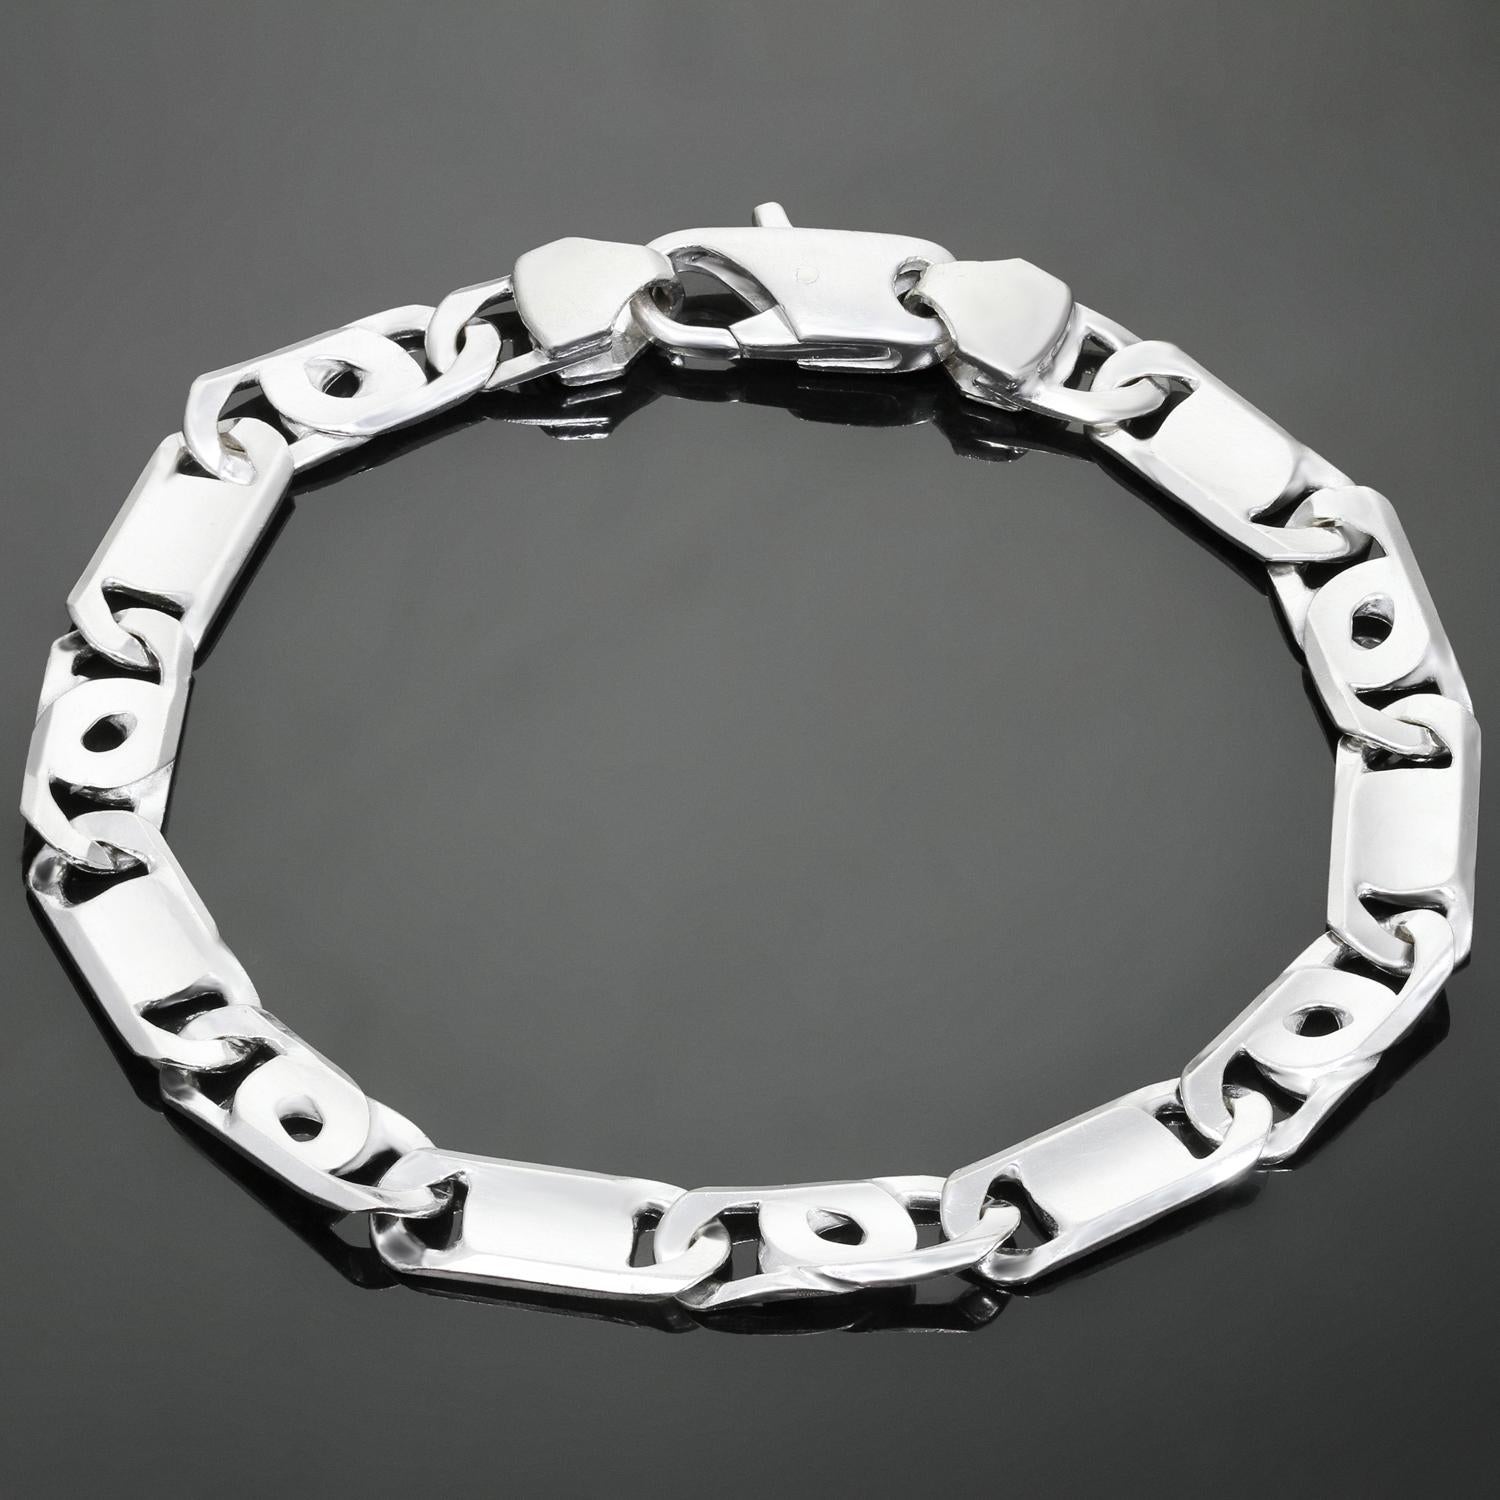 Ce bracelet classique unisexe présente des maillons plats façonnés en or blanc 18k. Fabriqué en Italie dans les années 1990. Dimensions : 0,31